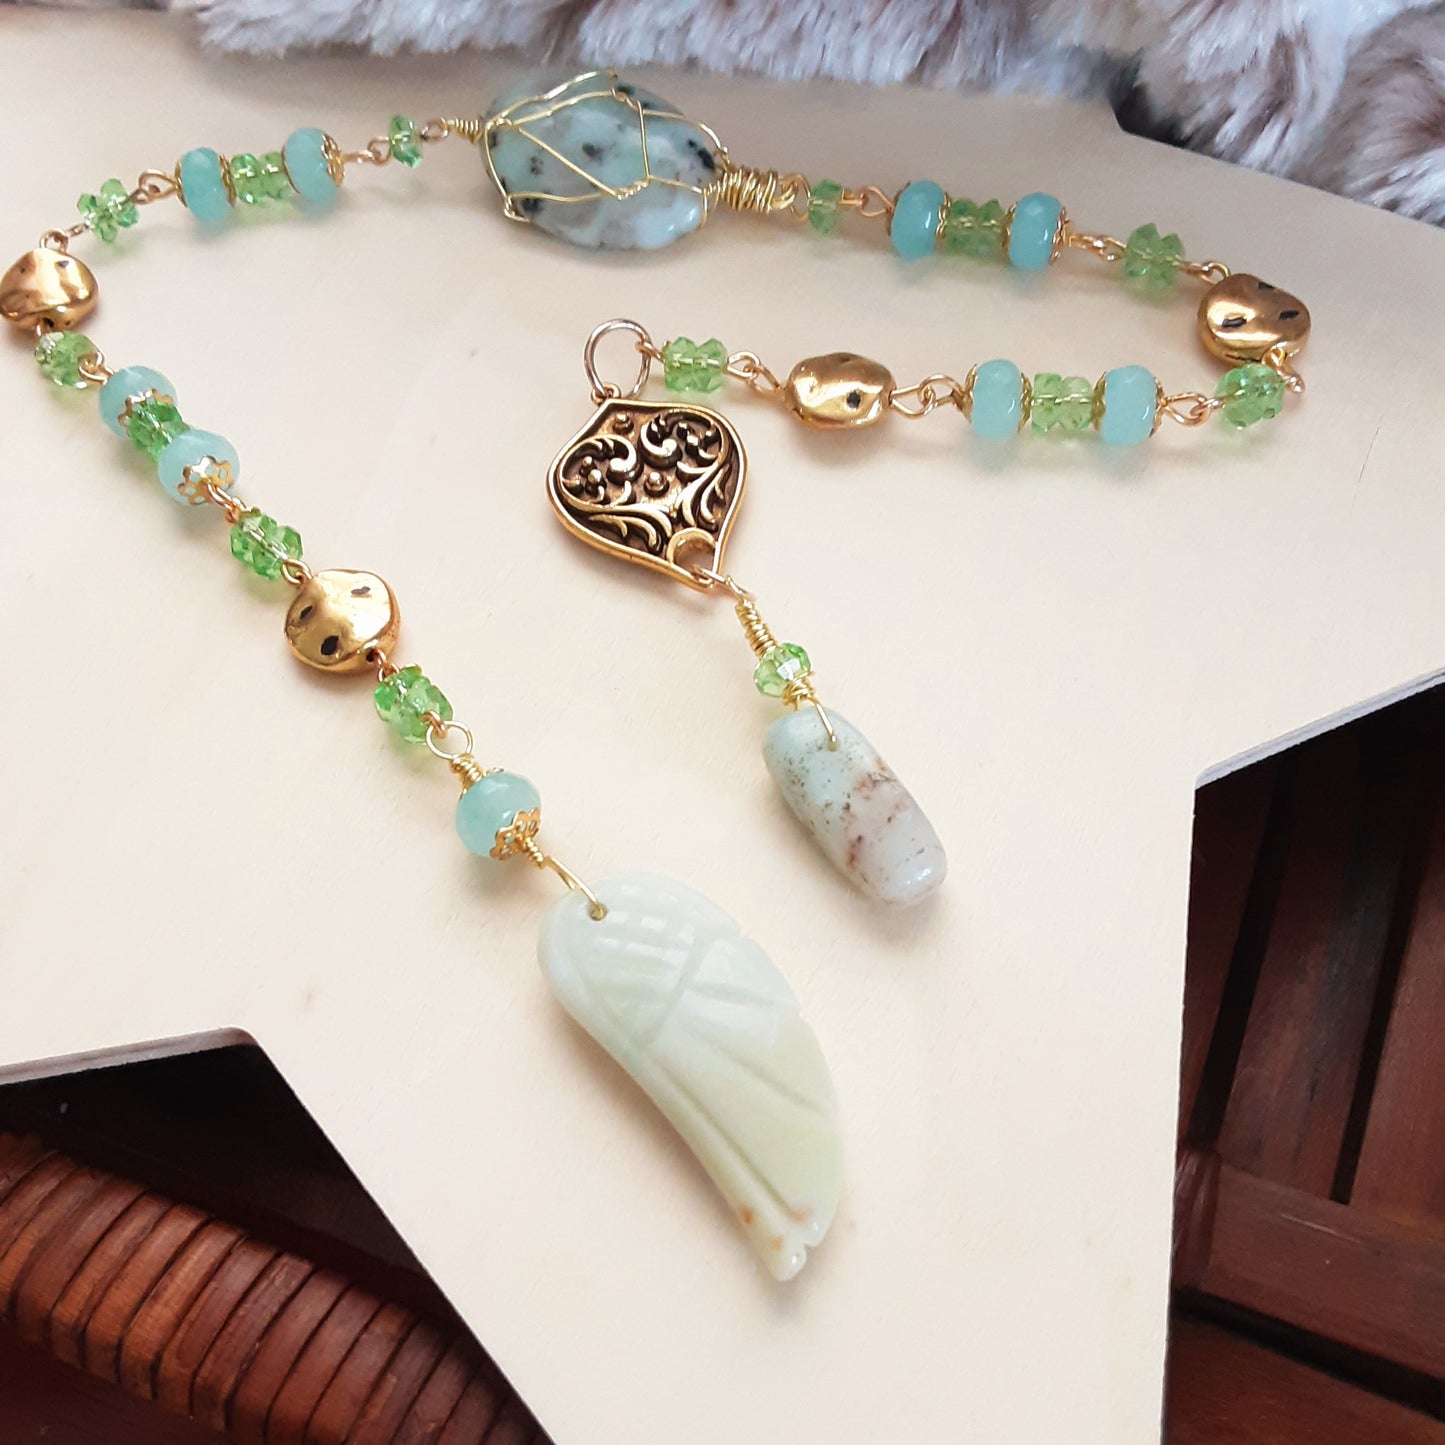 Hermes Prayer beads